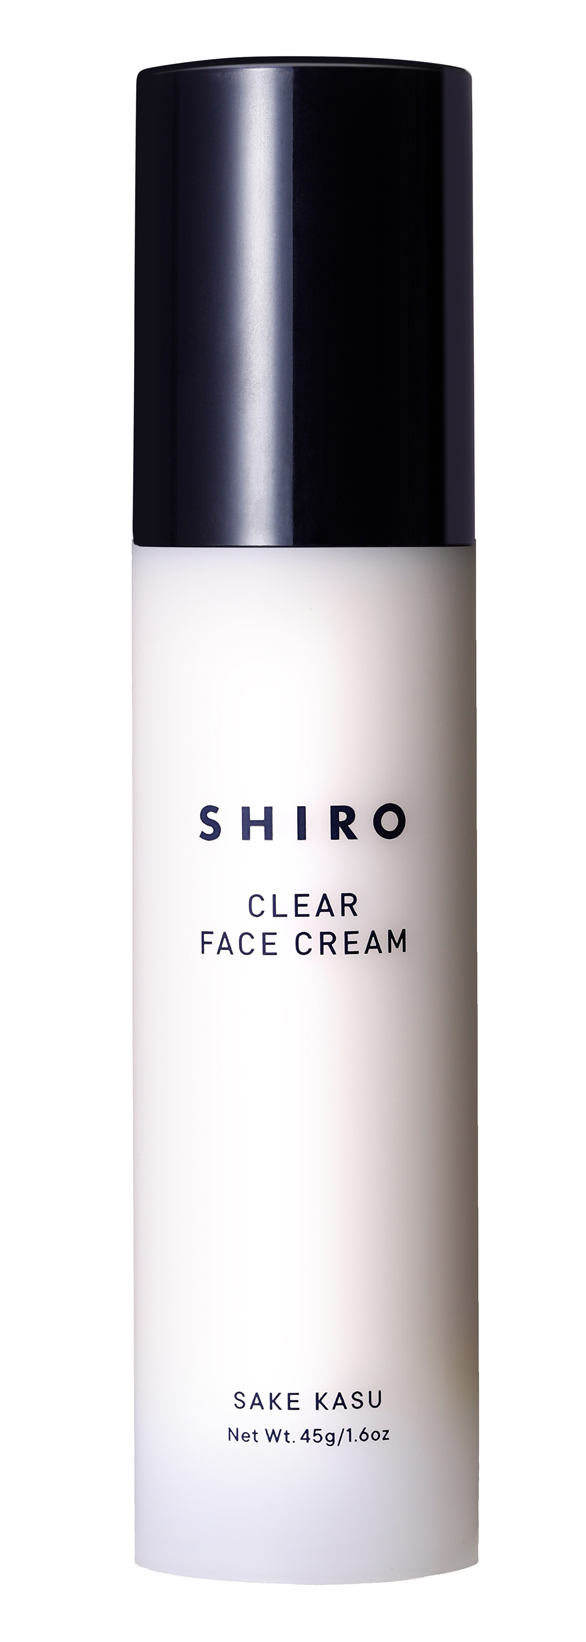 日本零負評品牌SHIRO天然有機酒粕面霜